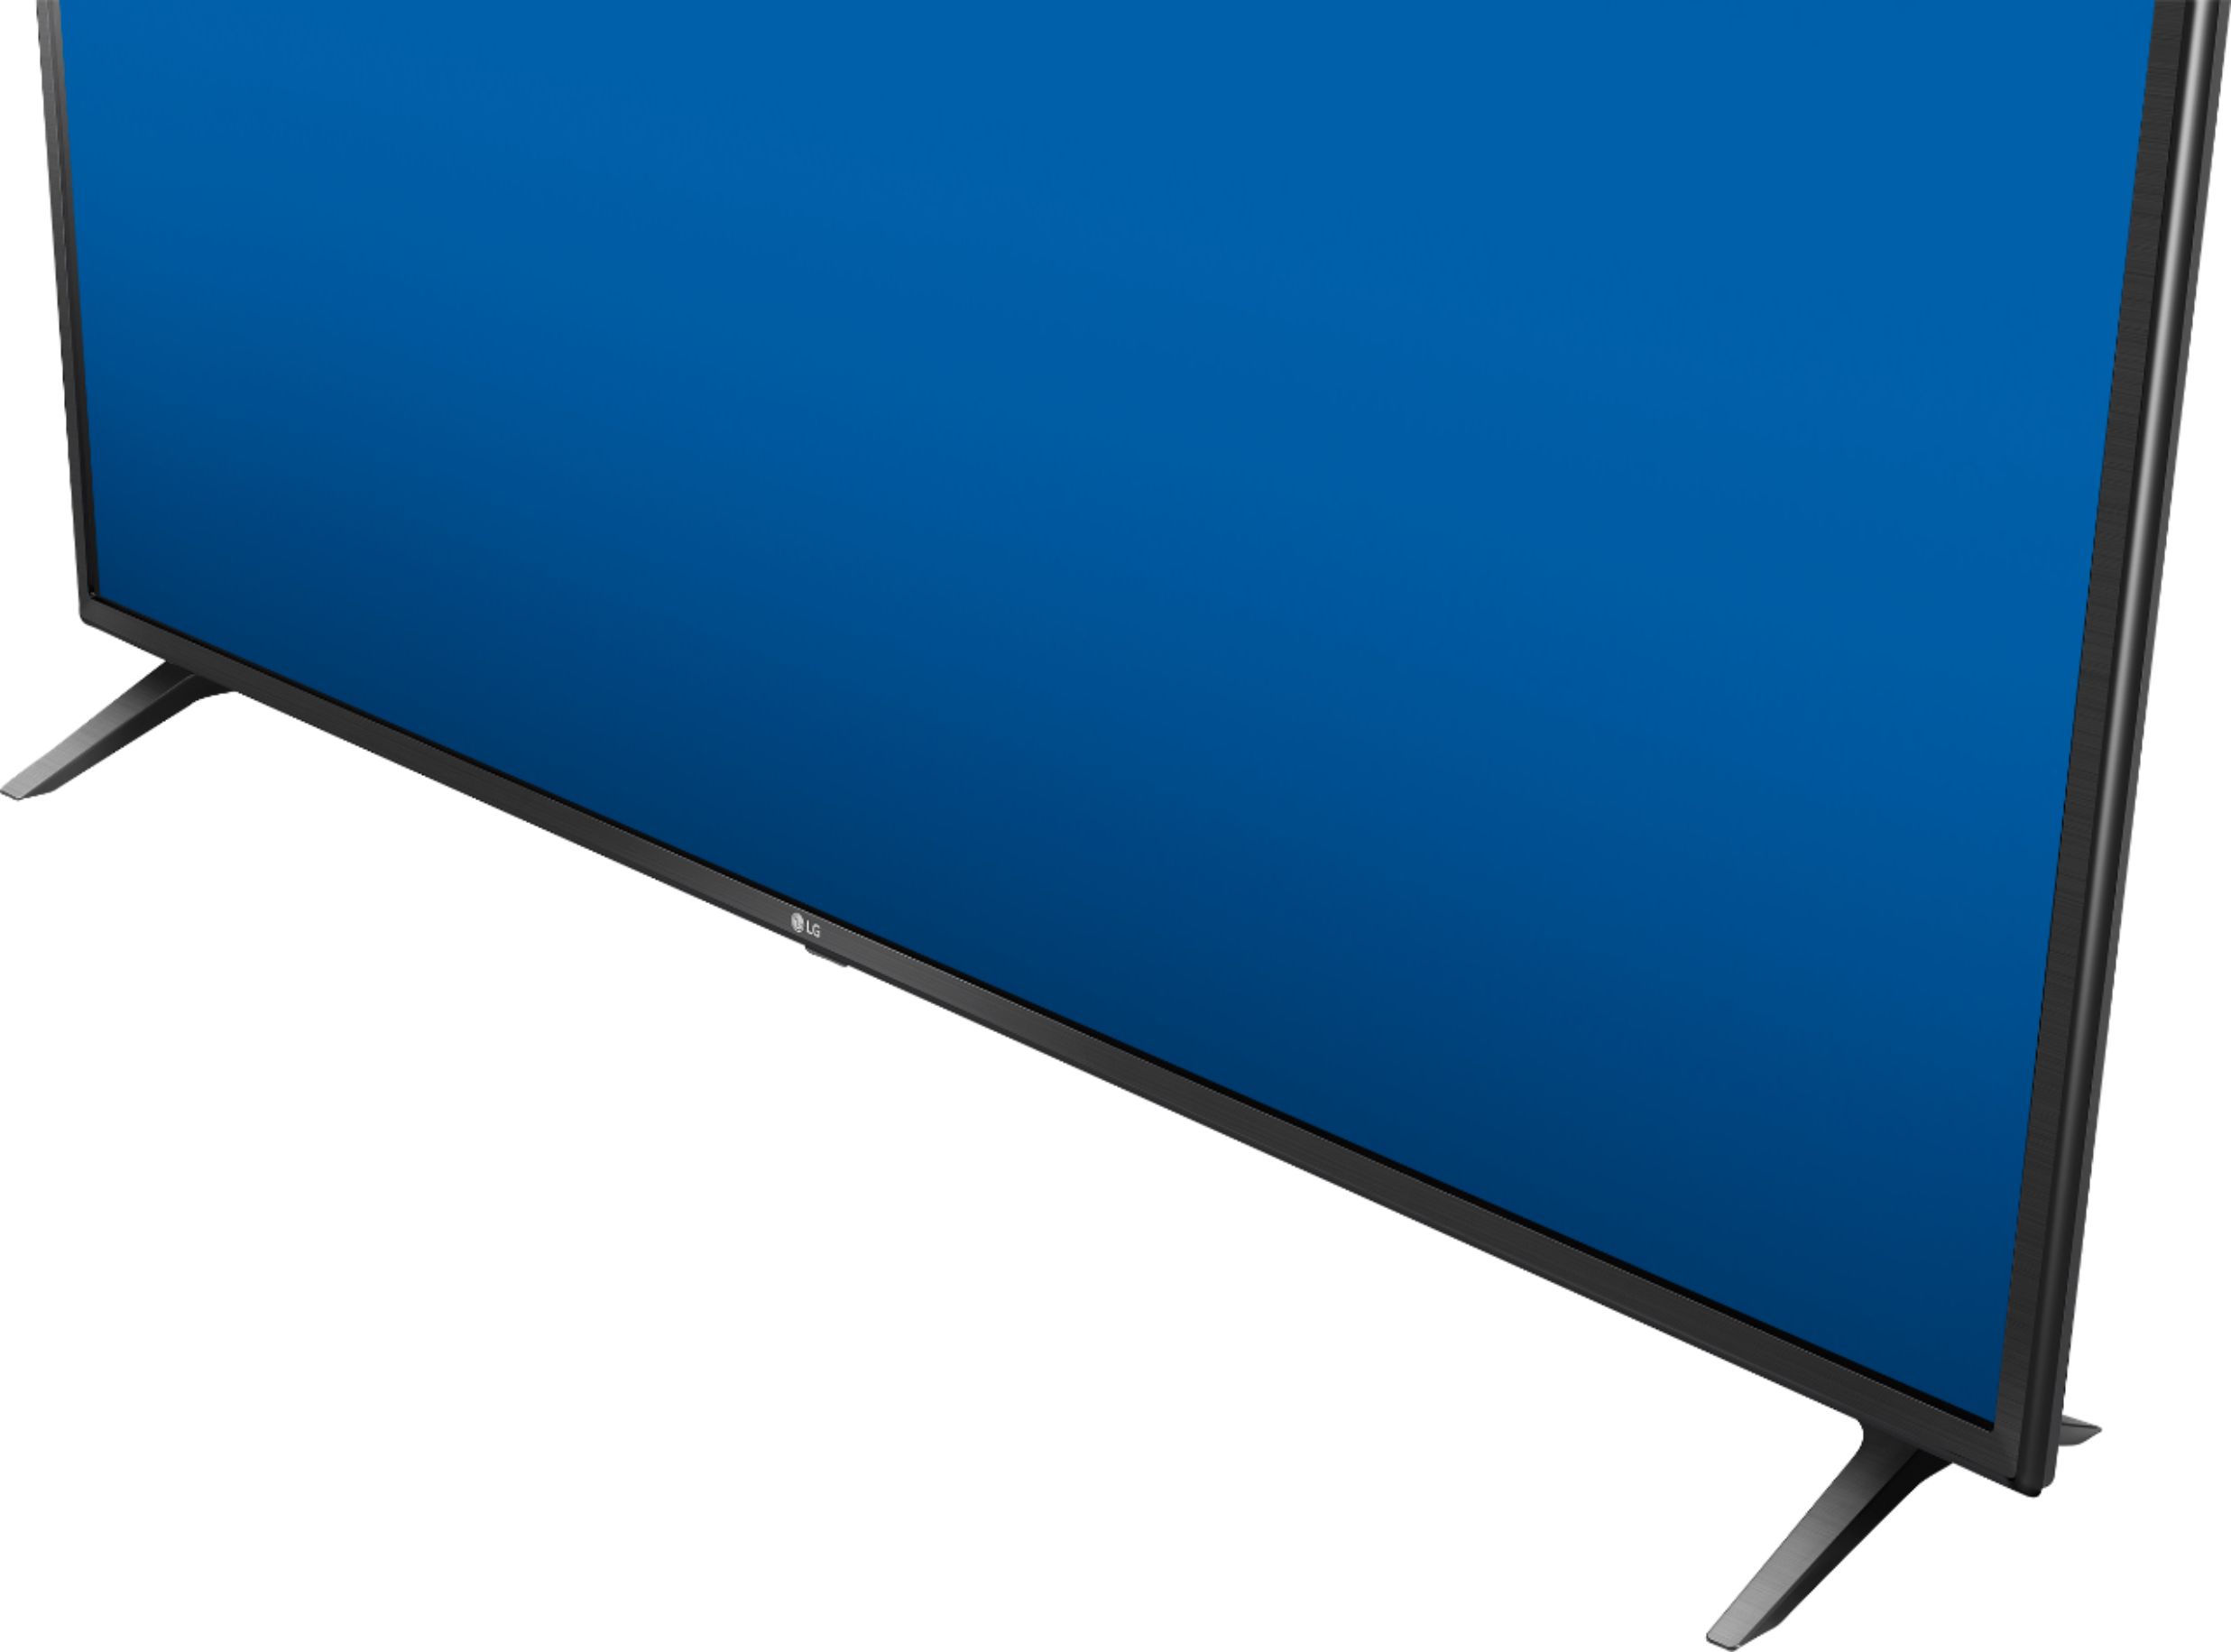 LG 55 Class UN7300 Series LED 4K UHD Smart webOS TV 55UN7300PUF - Best Buy